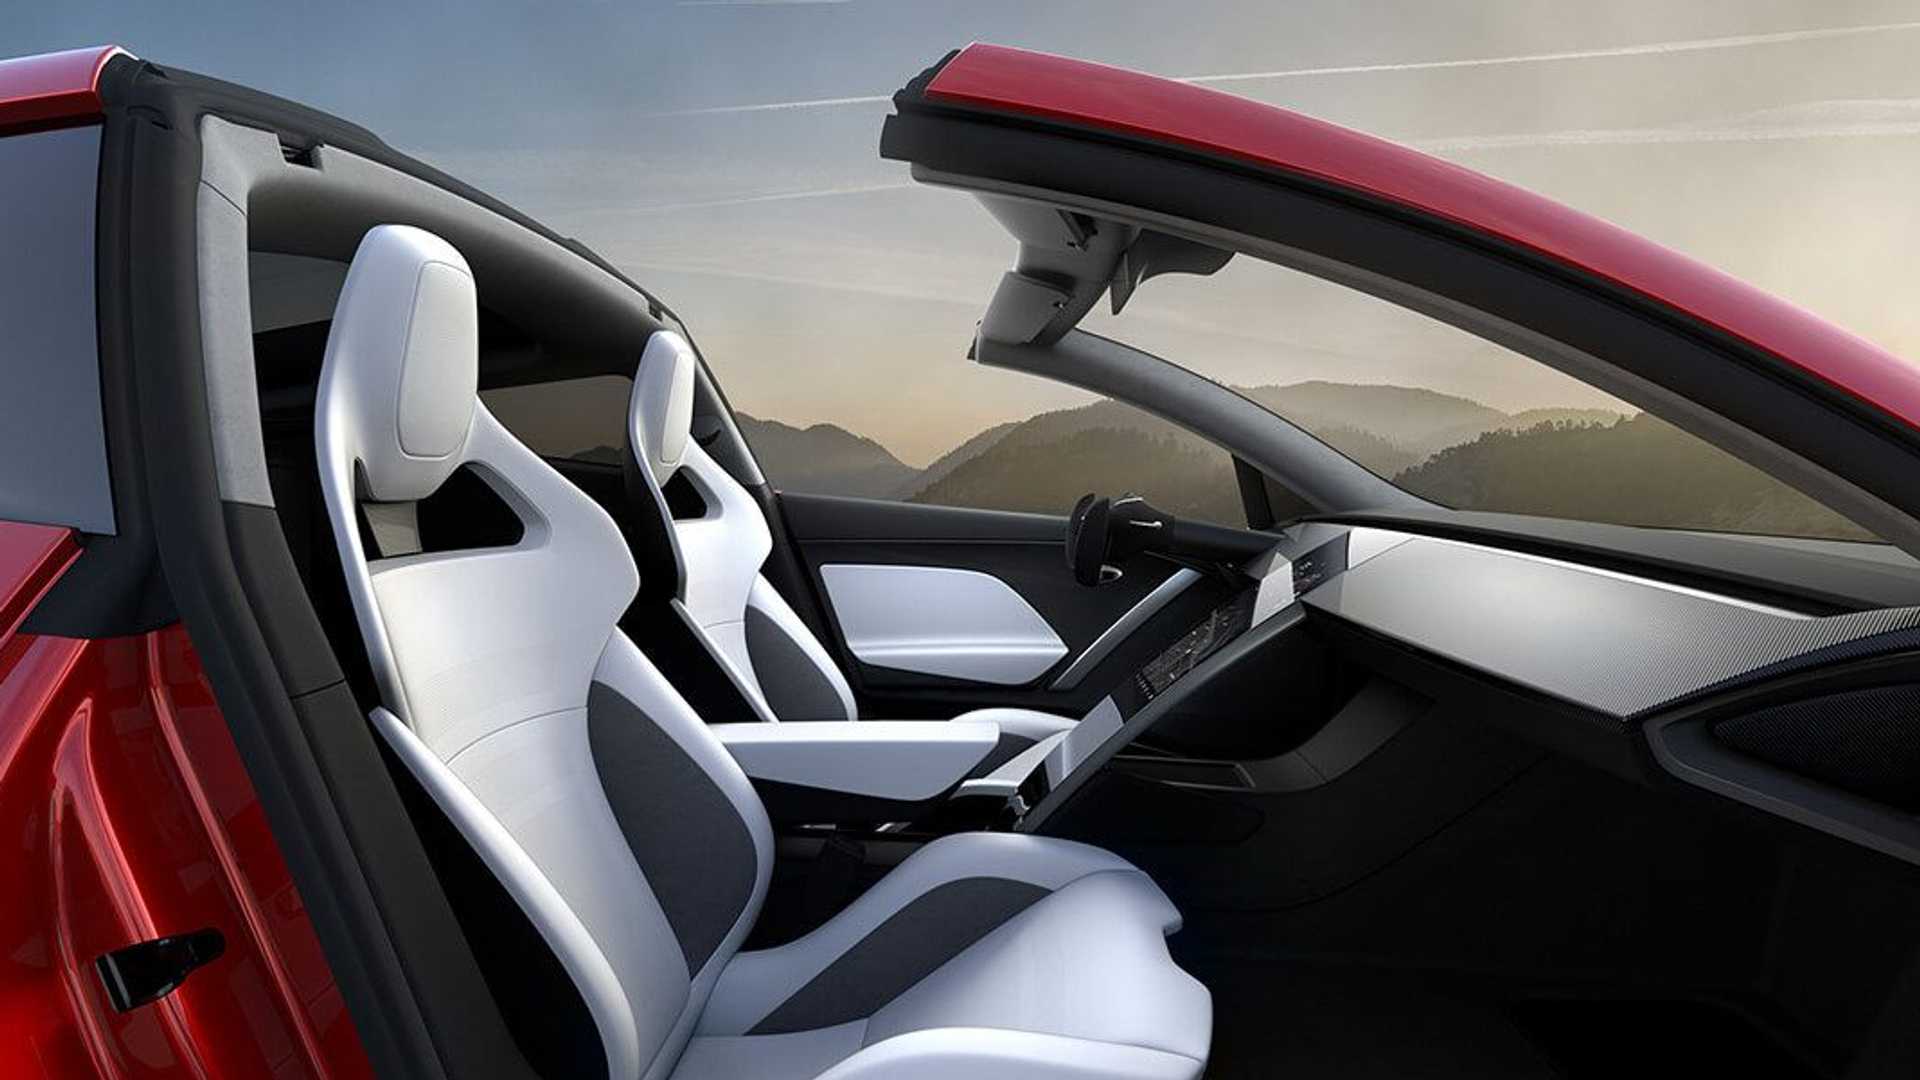 کابین خودروی الکتریکی تسلا رودستر / Tesla Roadster قرمز رنگ